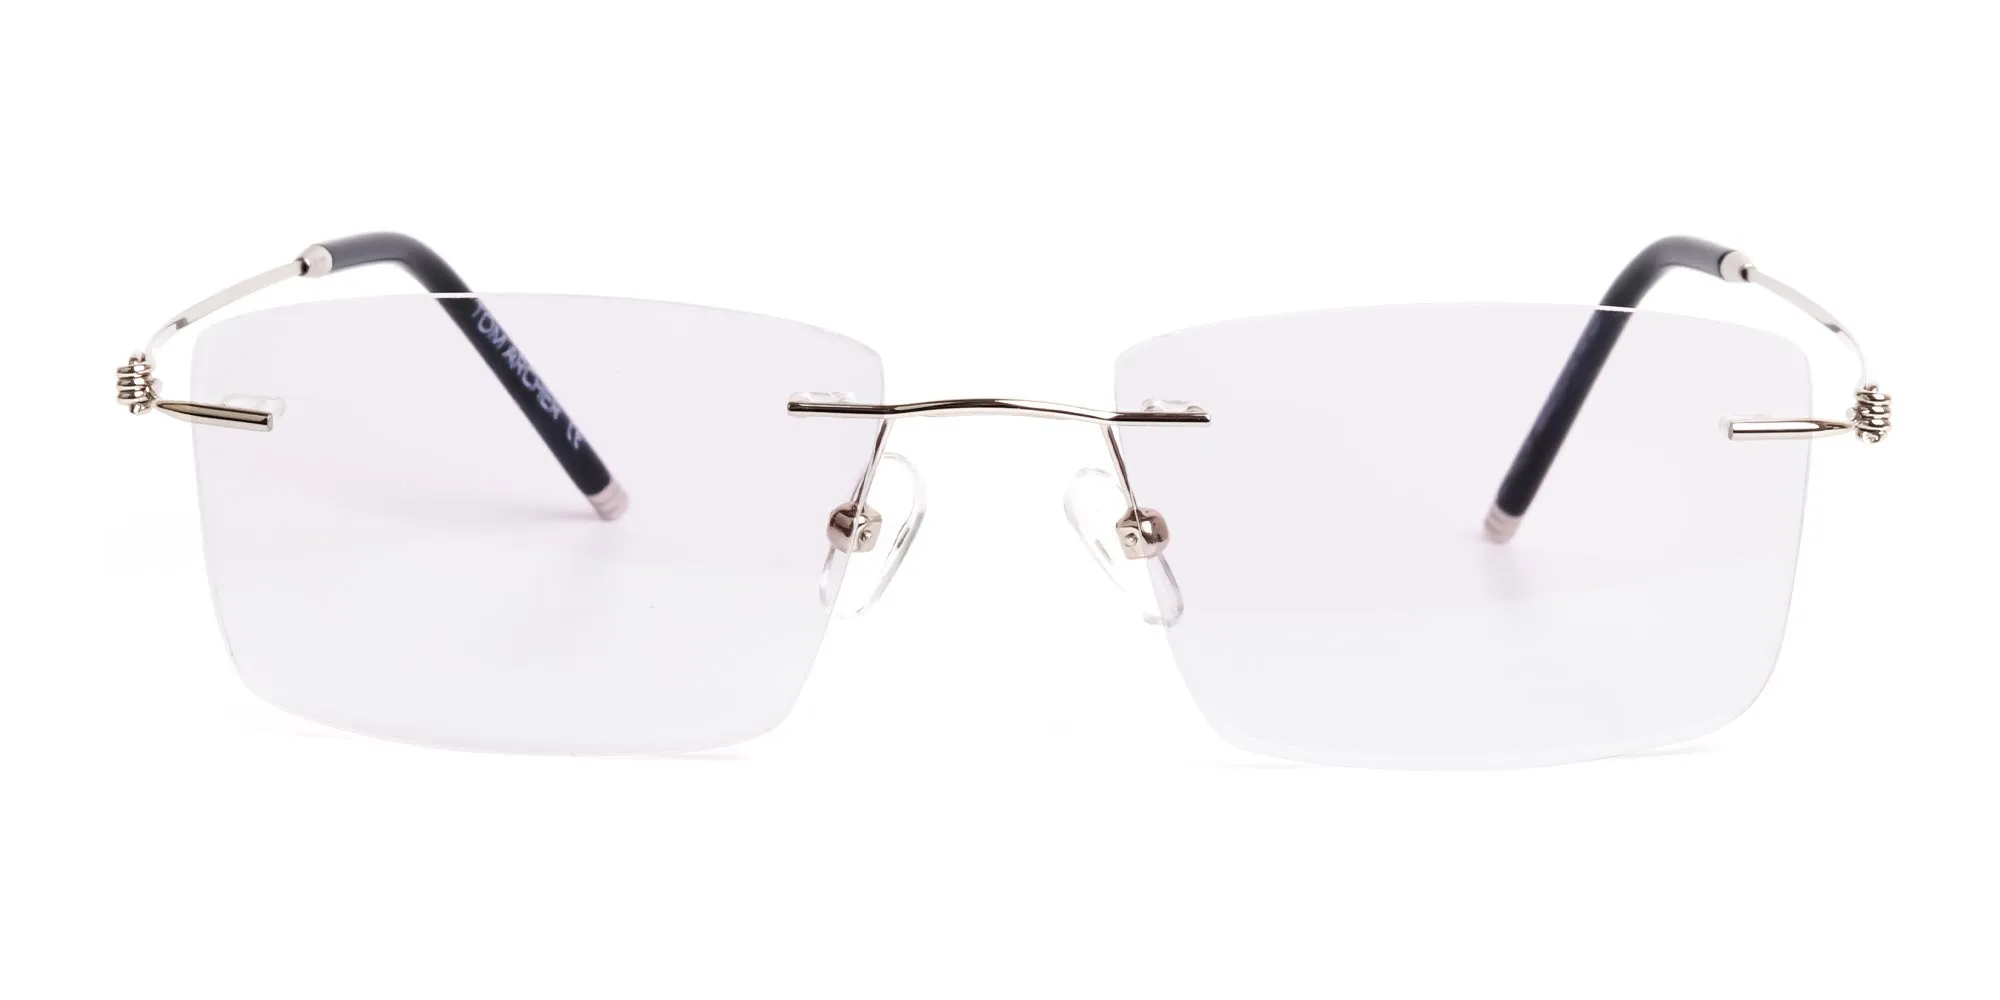 HEBERLET P2 - Silver Rectangular Rimless Titanium Glasses | Specscart.®